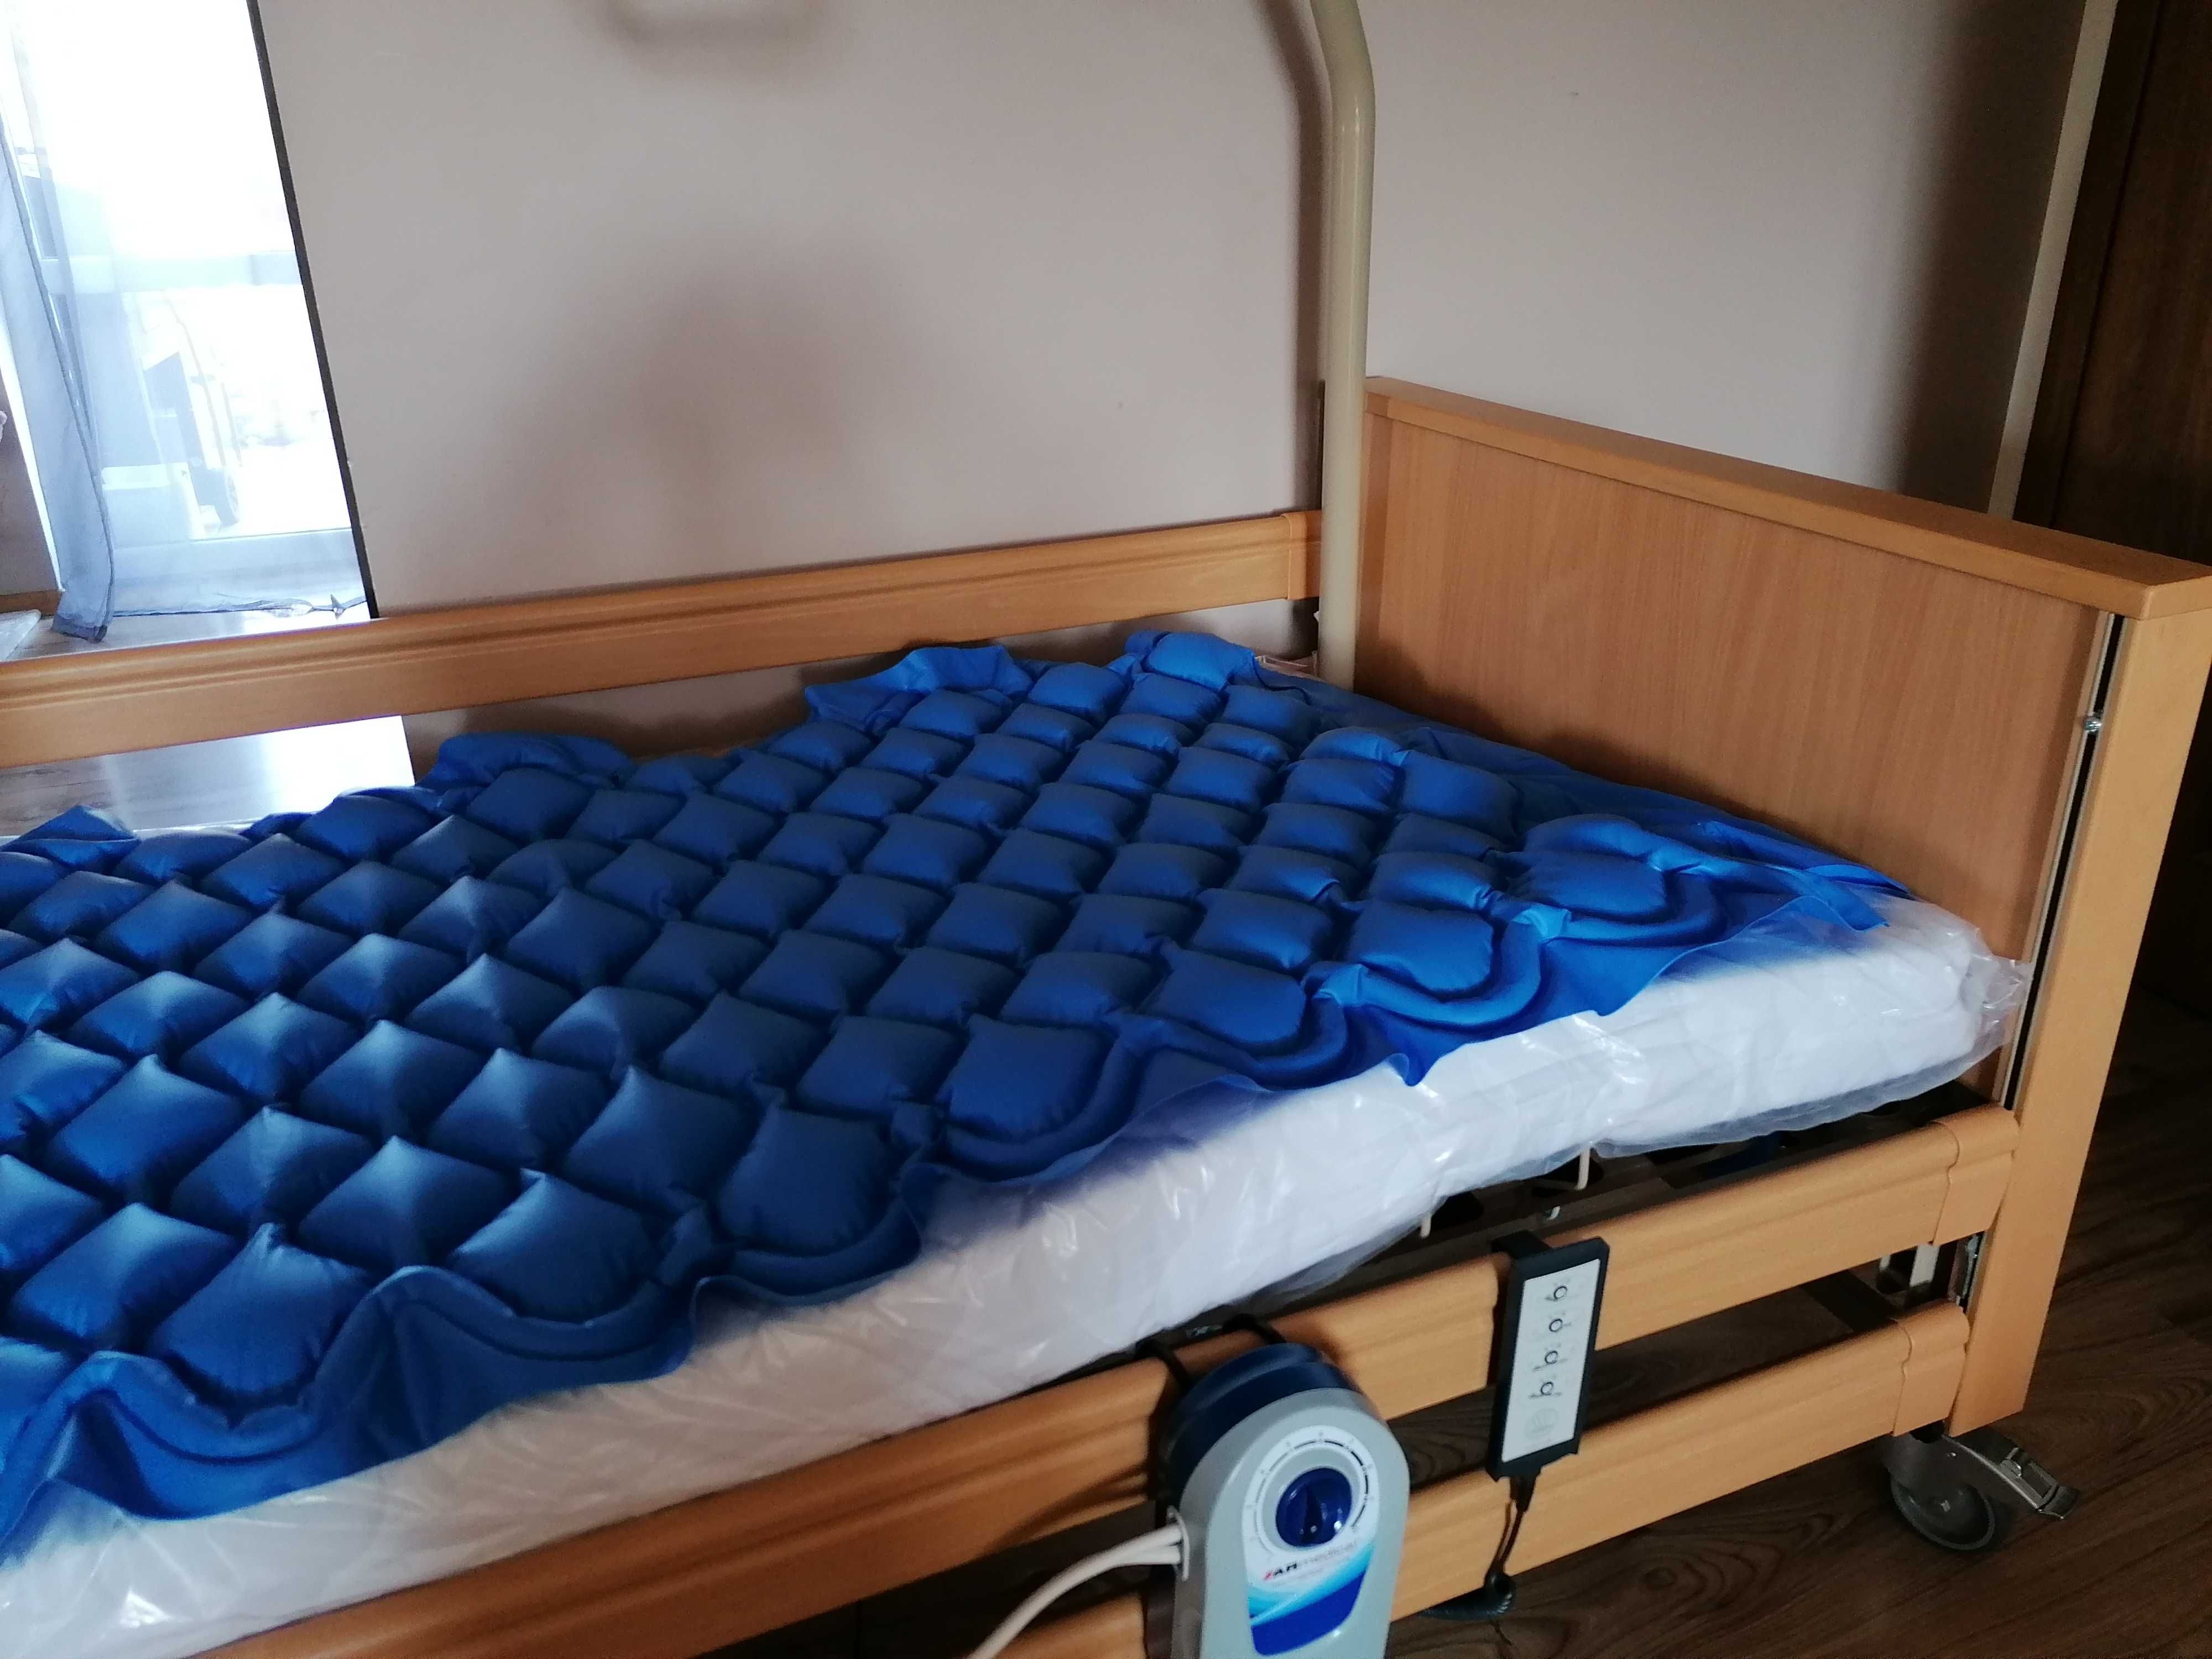 Łóżko rehabilitacyjne dla seniora wynajem Luna 2 Faktura